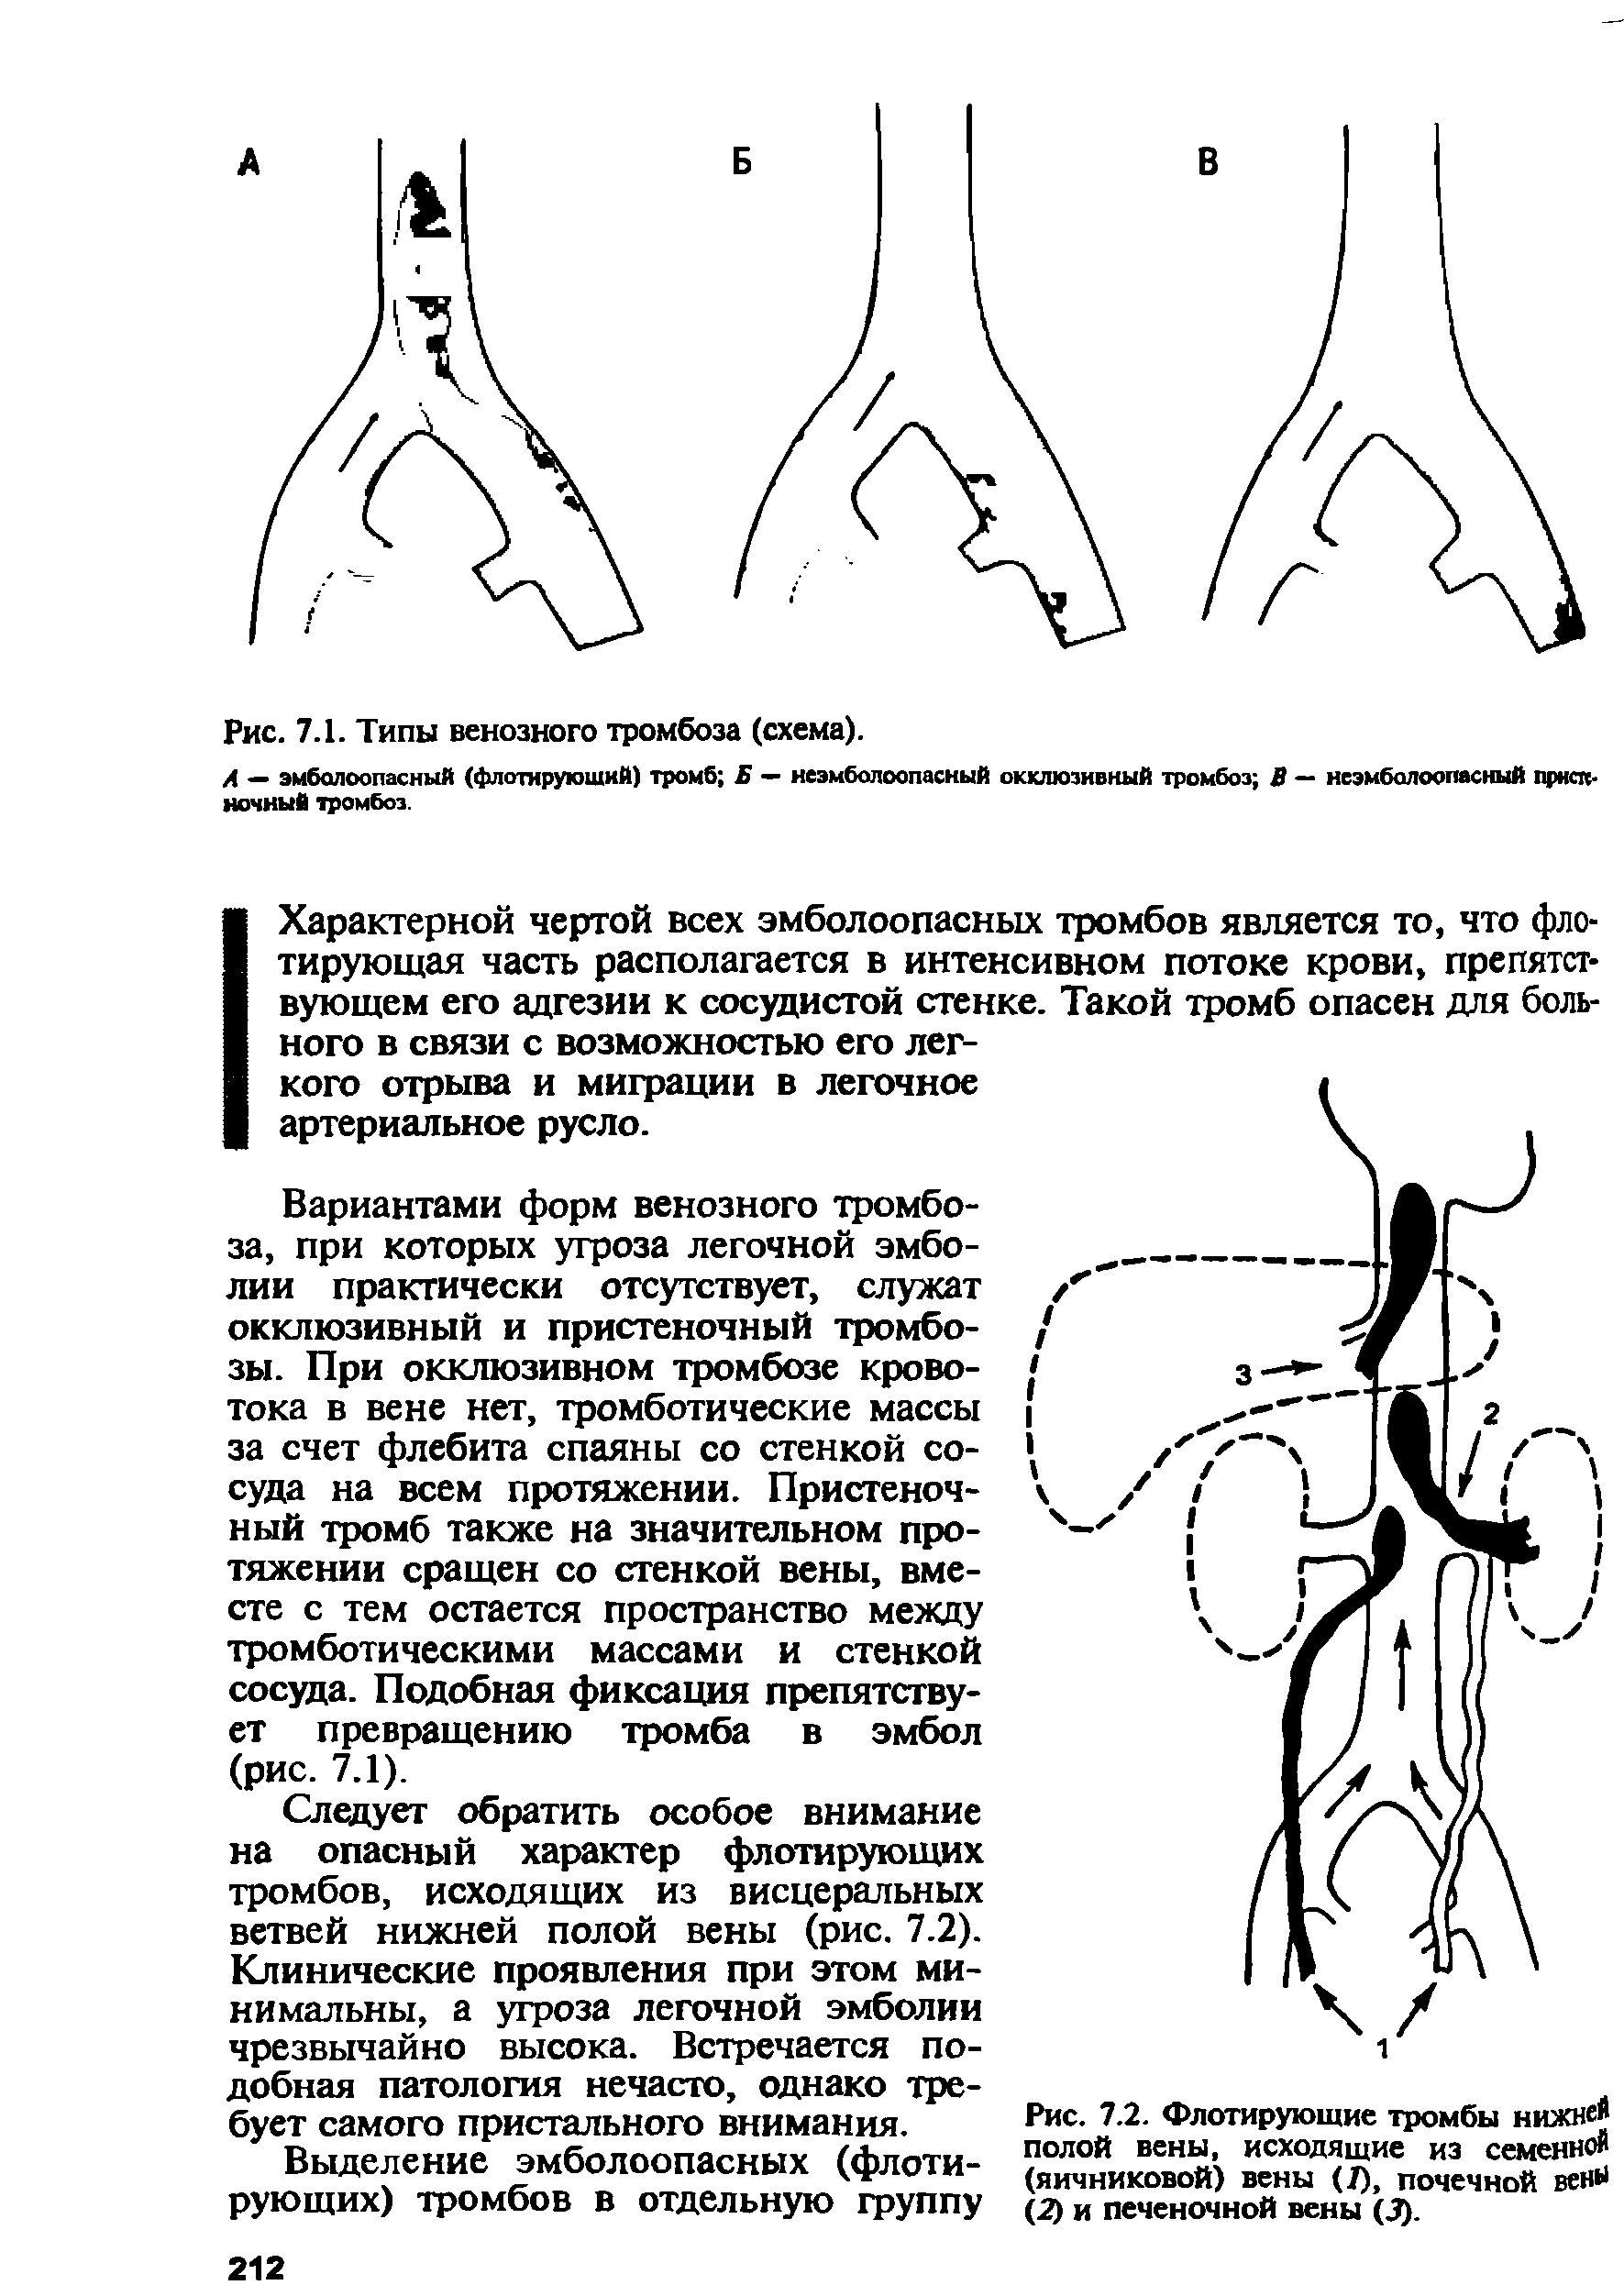 Рис. 7.2. Флотирующие тромбы нижней полой вены, исходящие из семенной (яичниковой) вены (7), почечной венН (2) и печеночной вены (3).